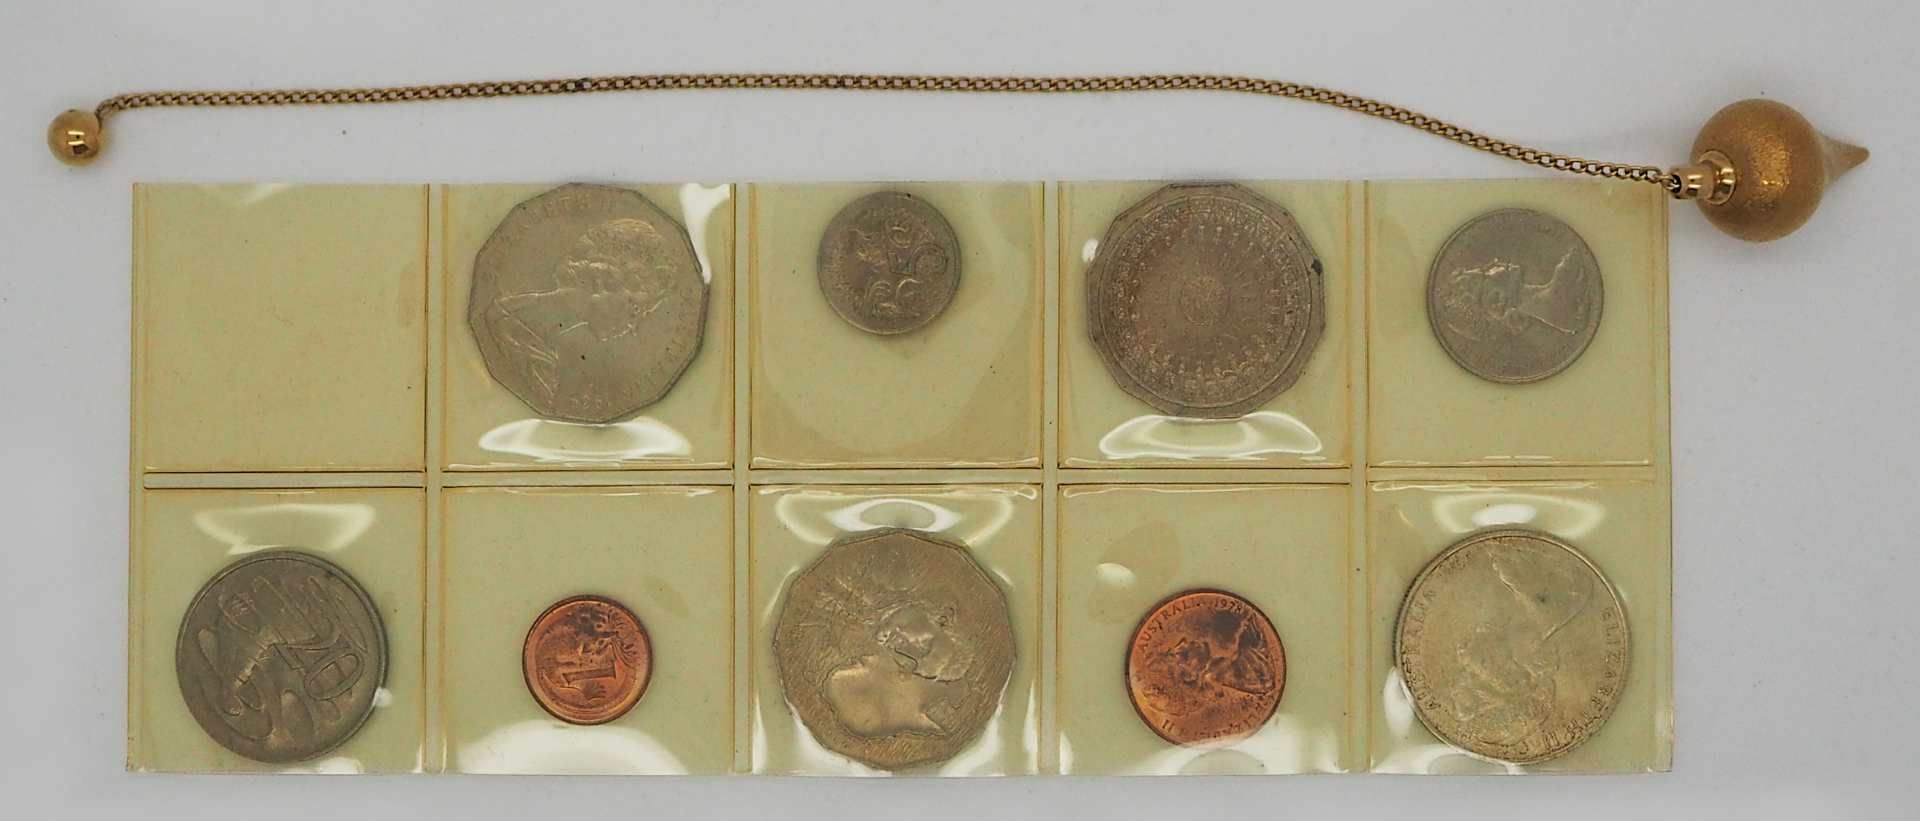 1 Konv. Münzen Medaillen Si. u.a. BRD Kanada versch. Länder Zahlgeld u.a. im Koffer - Bild 2 aus 2